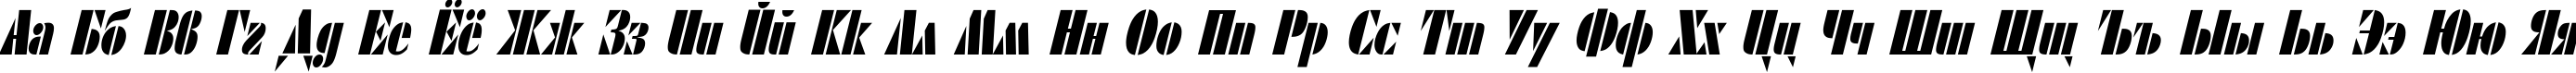 Пример написания русского алфавита шрифтом ShablonCond Oblique